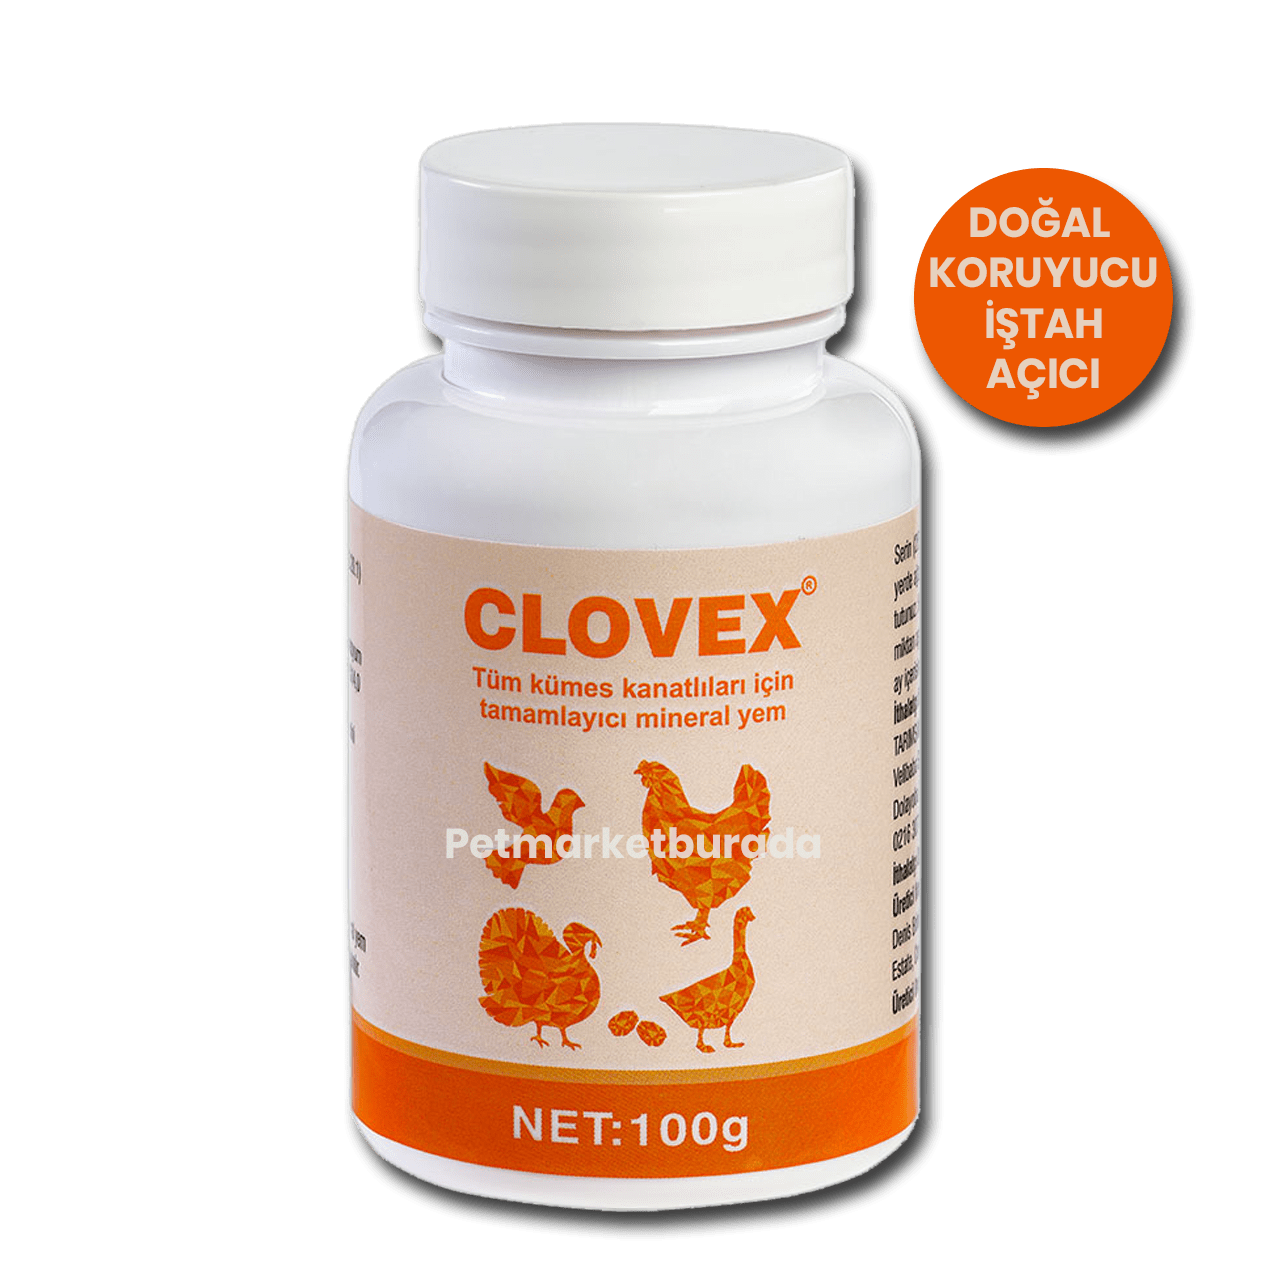 Tarımsan Clovex Doğal Sarımsaklı İştah Açıcı Hastalıklara Karşı Koruyucu Katkı 100 gr